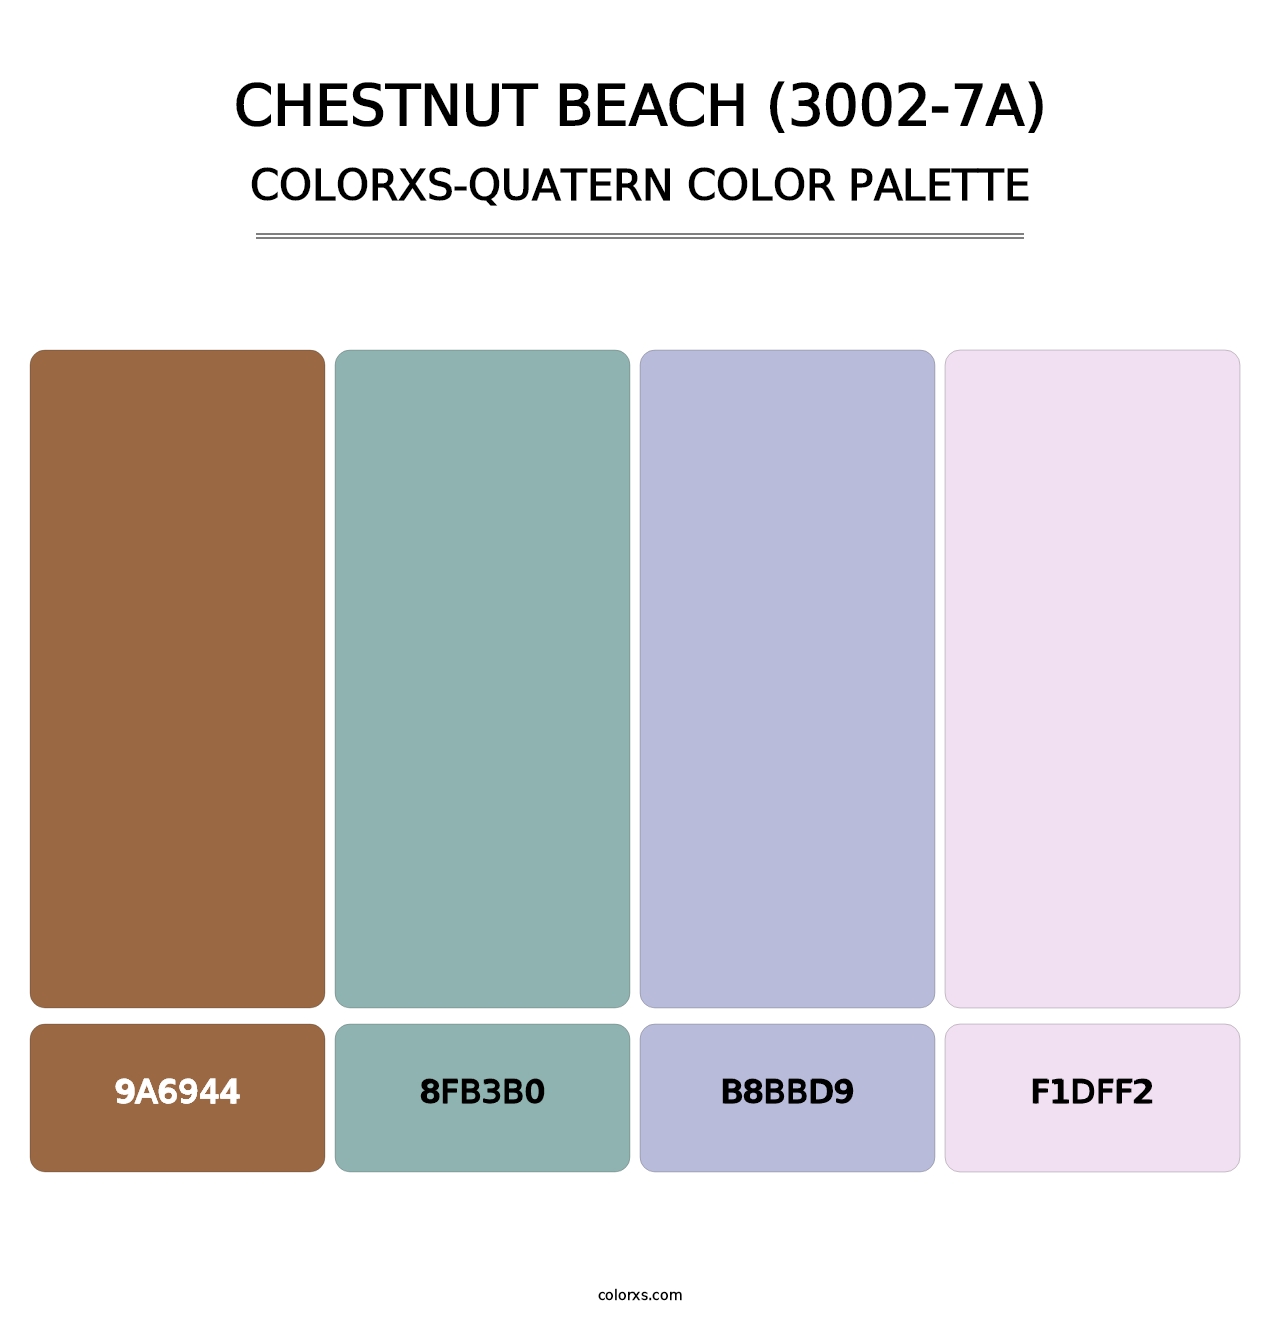 Chestnut Beach (3002-7A) - Colorxs Quatern Palette